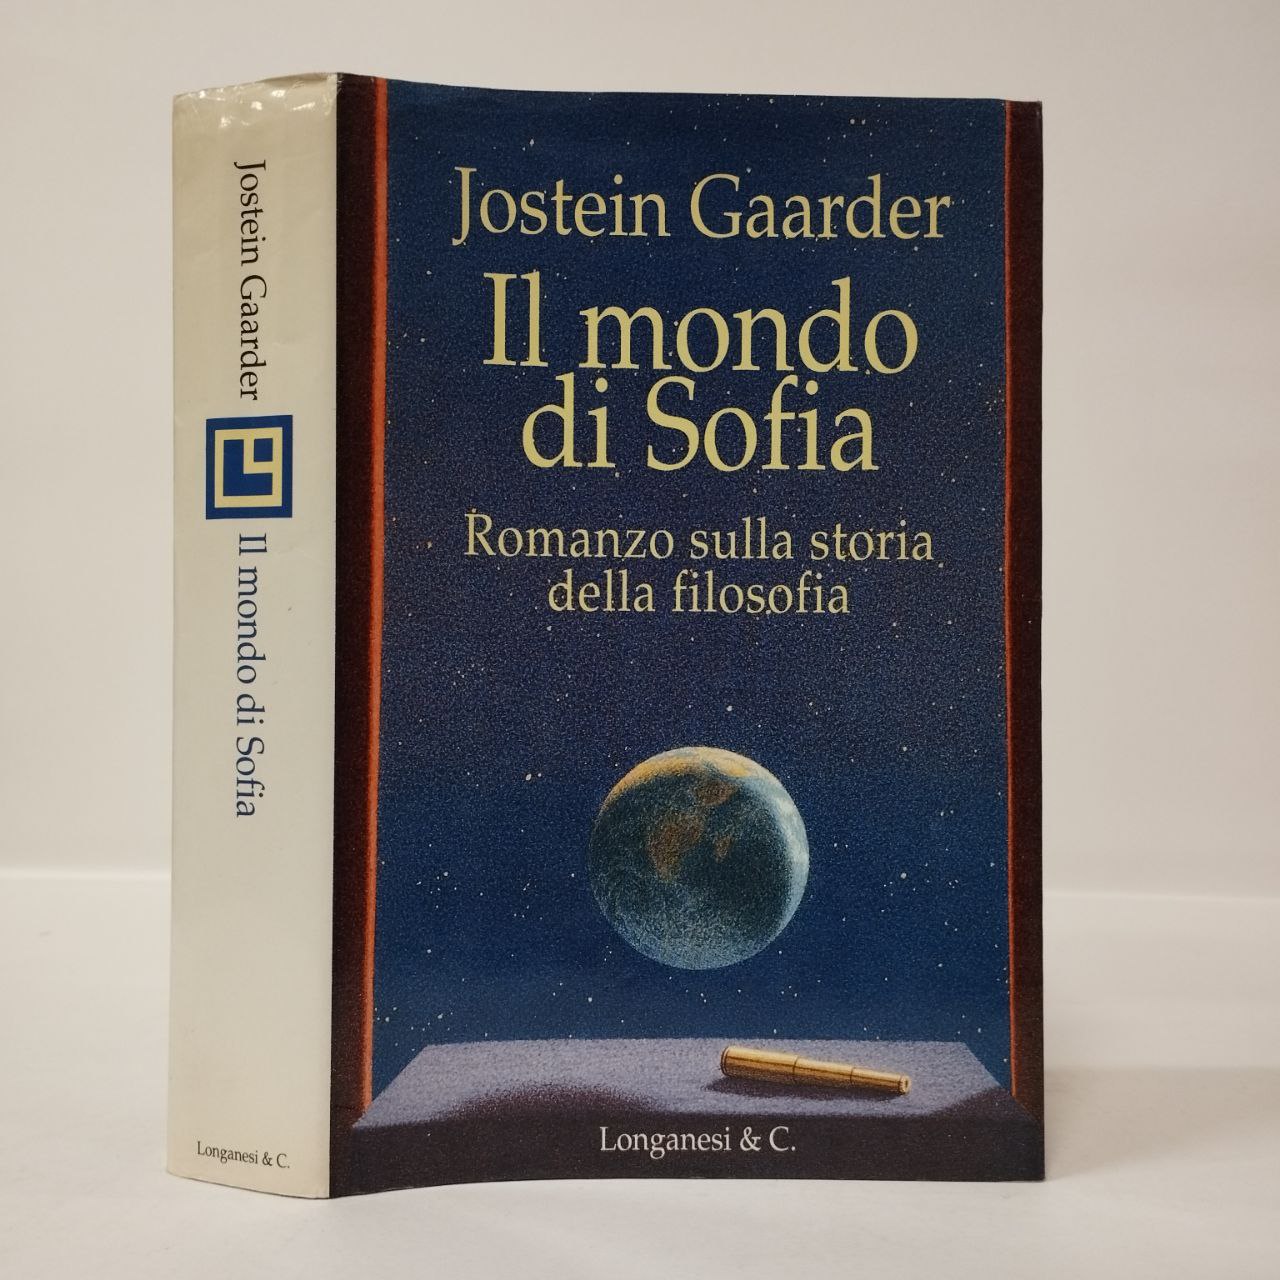 Il mondo di Sofia. Romanzo sulla storia della filosofia. Gaarder Jostein.  Longanesi, 1995. - Equilibri Libreria Torino